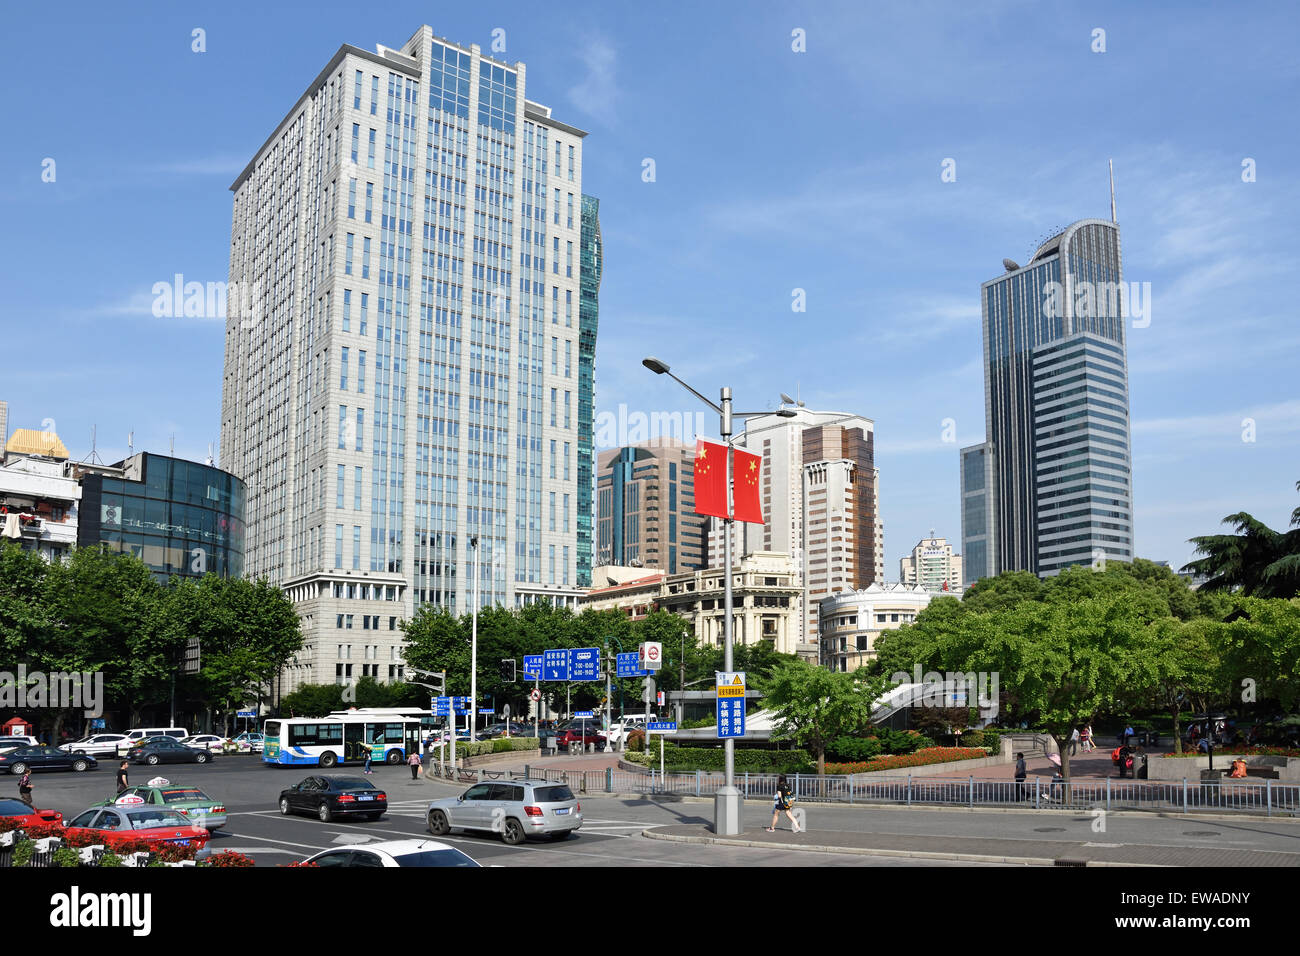 La ville de Shanghai de la circulation Place du Peuple Xizang Road Nanjing Road Huangpu District chinois Chine Banque D'Images